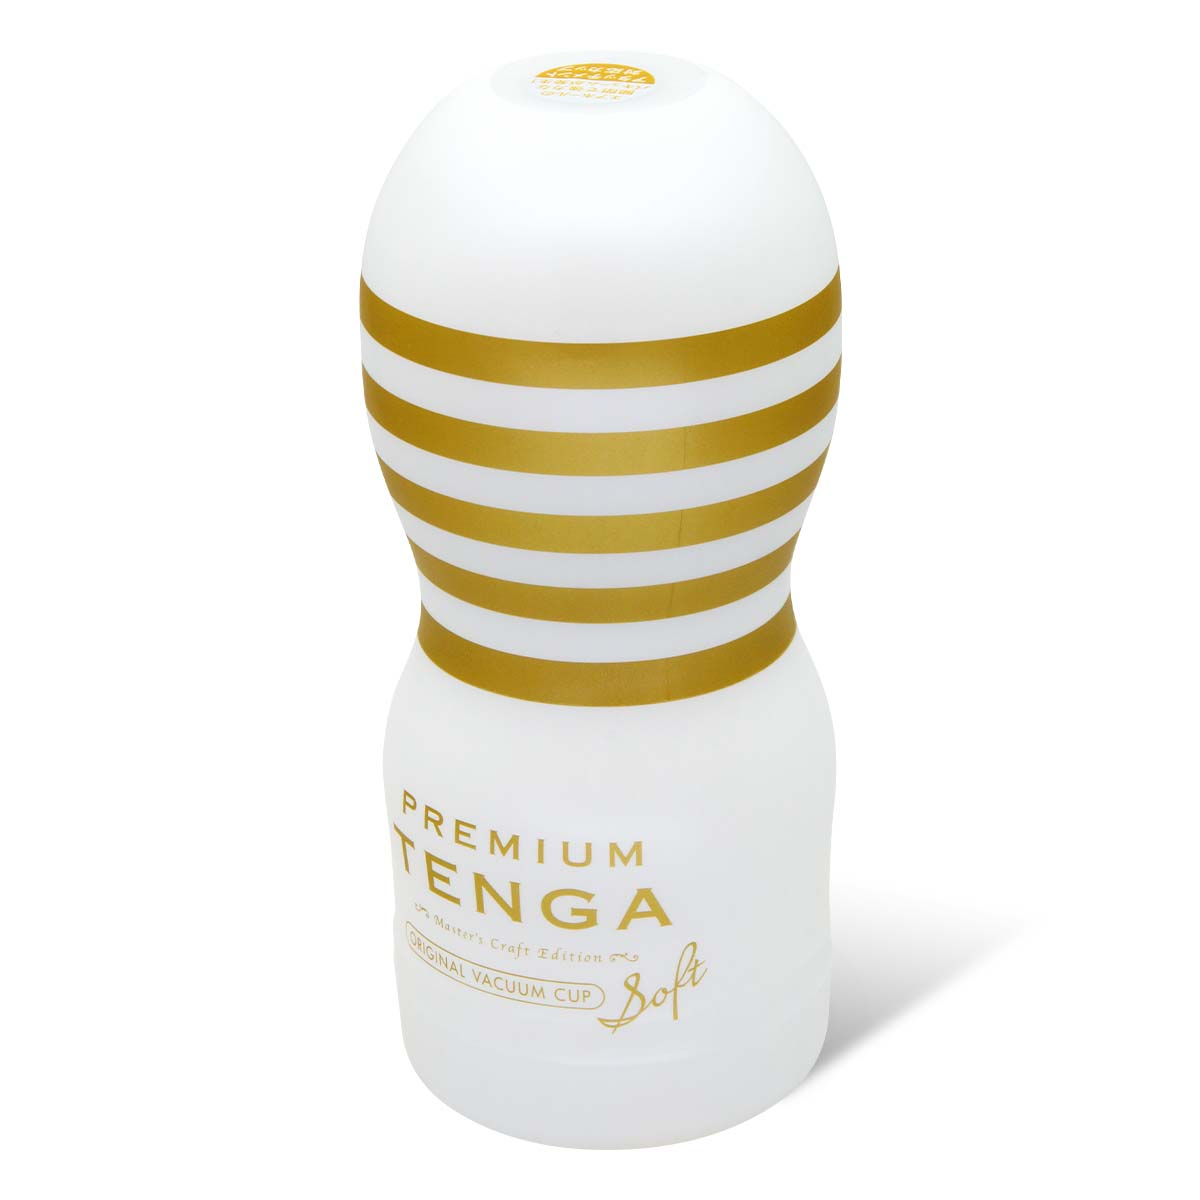 テンガ TOC-201PS PREMIUM TENGA ORIGINAL VACUUM CUP 2nd Generation ソフト エディション-p_1